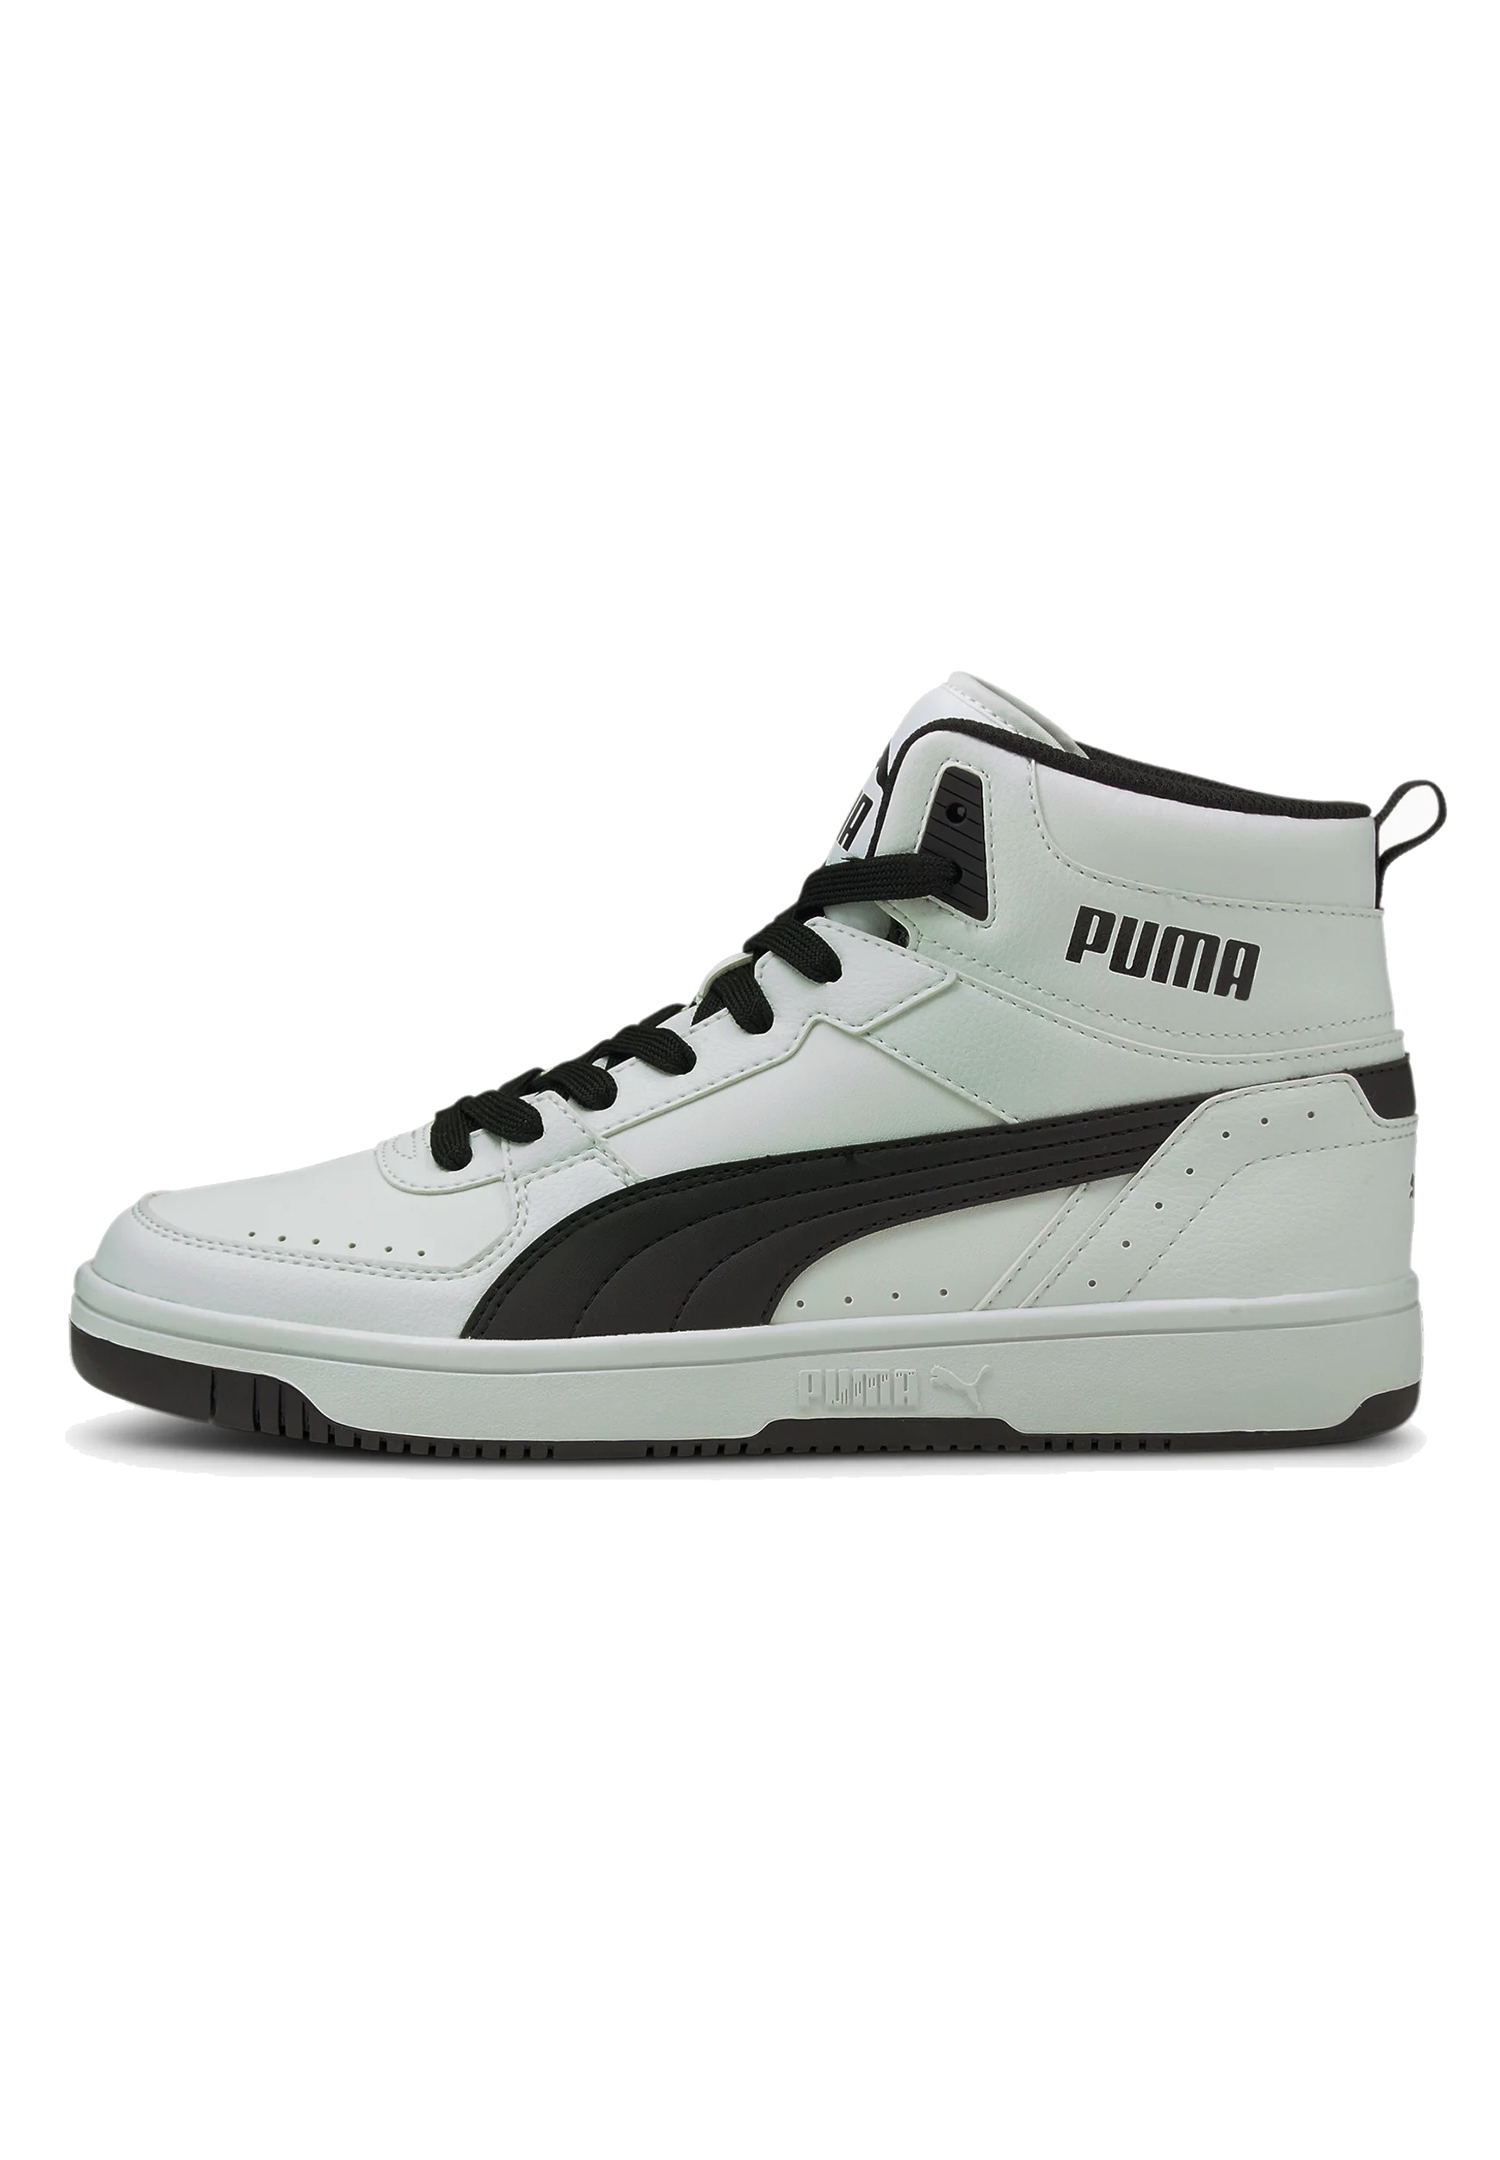 Puma Rebound JOY High Top Herren Sneaker Sportschuh 374765 weiss schwarz